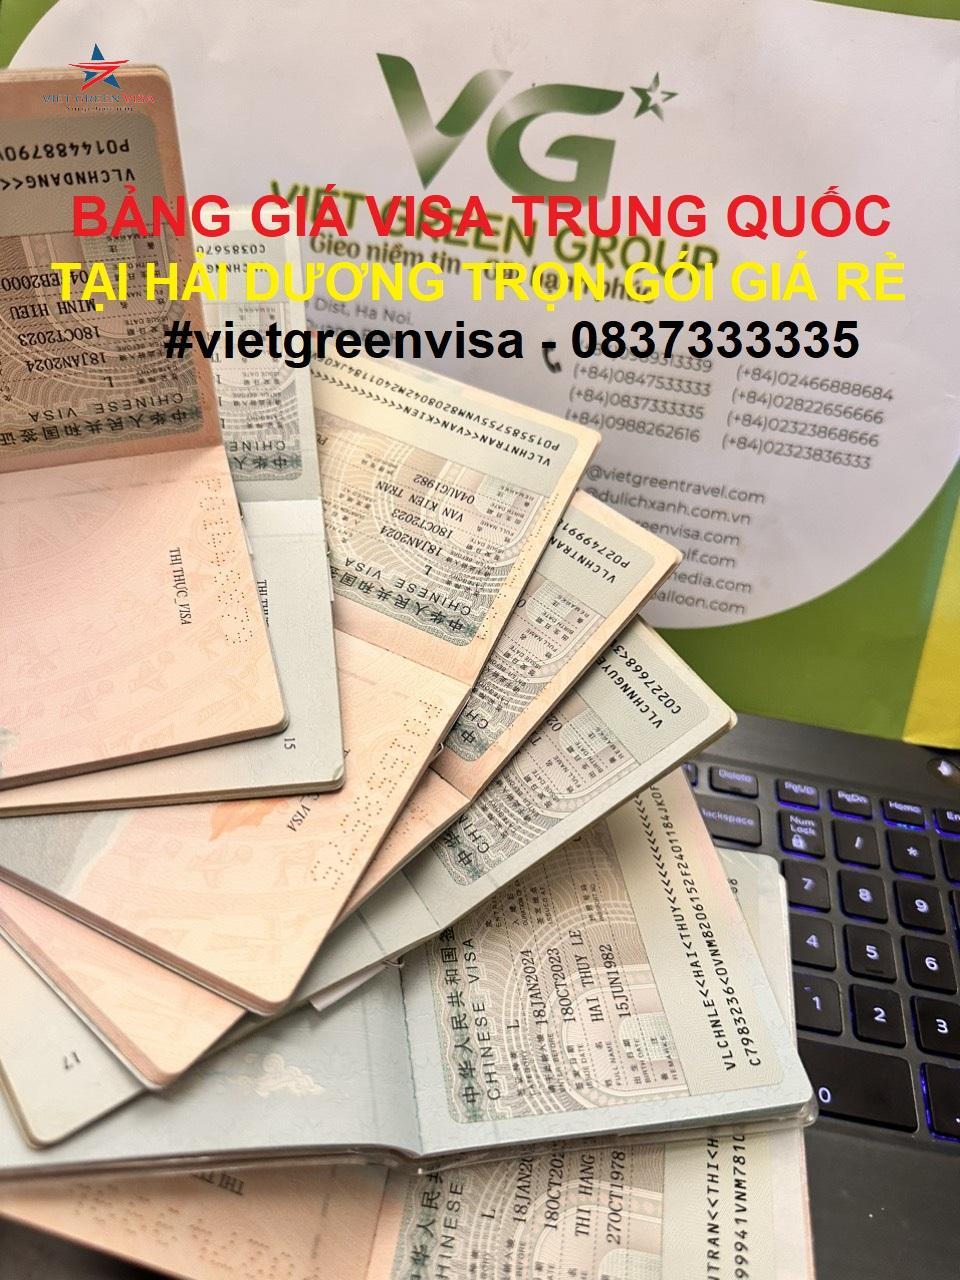 Dịch vụ xin visa Trung Quốc tại Hải Dương uy tín